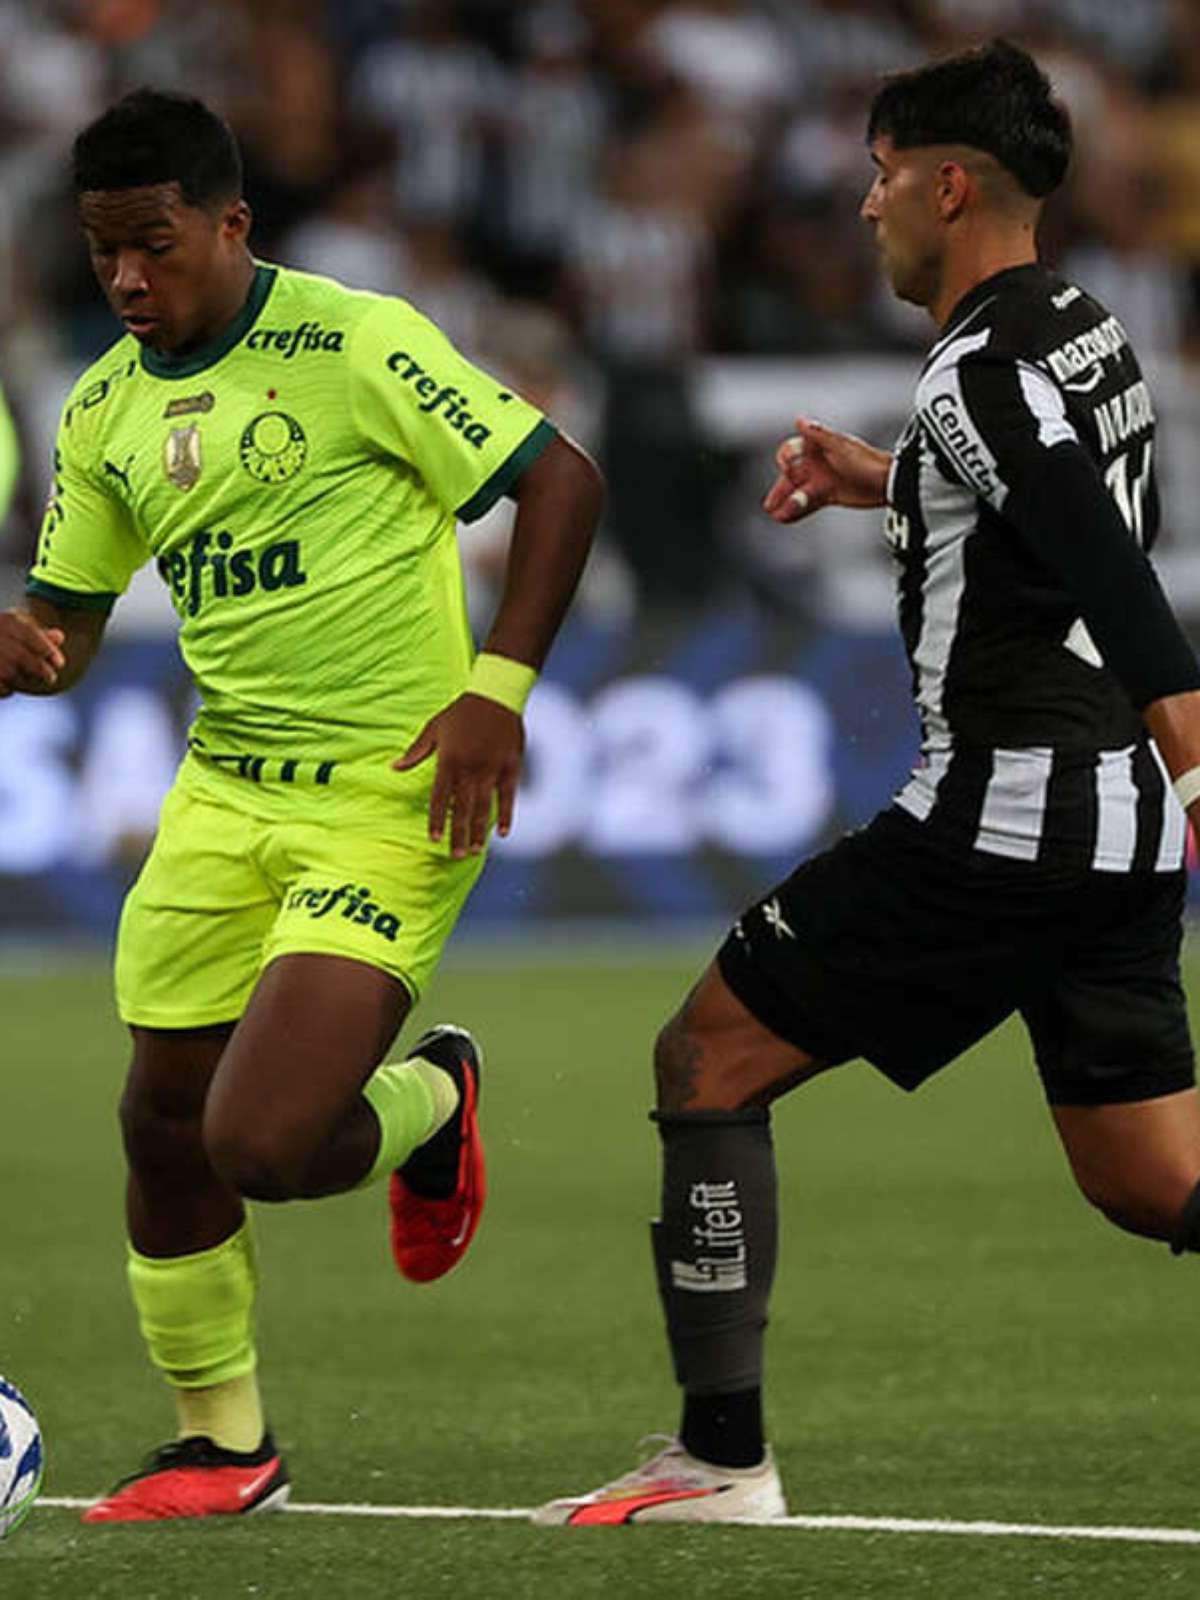 Árbitro estende jogo até Botafogo empatar e é agredido em campo